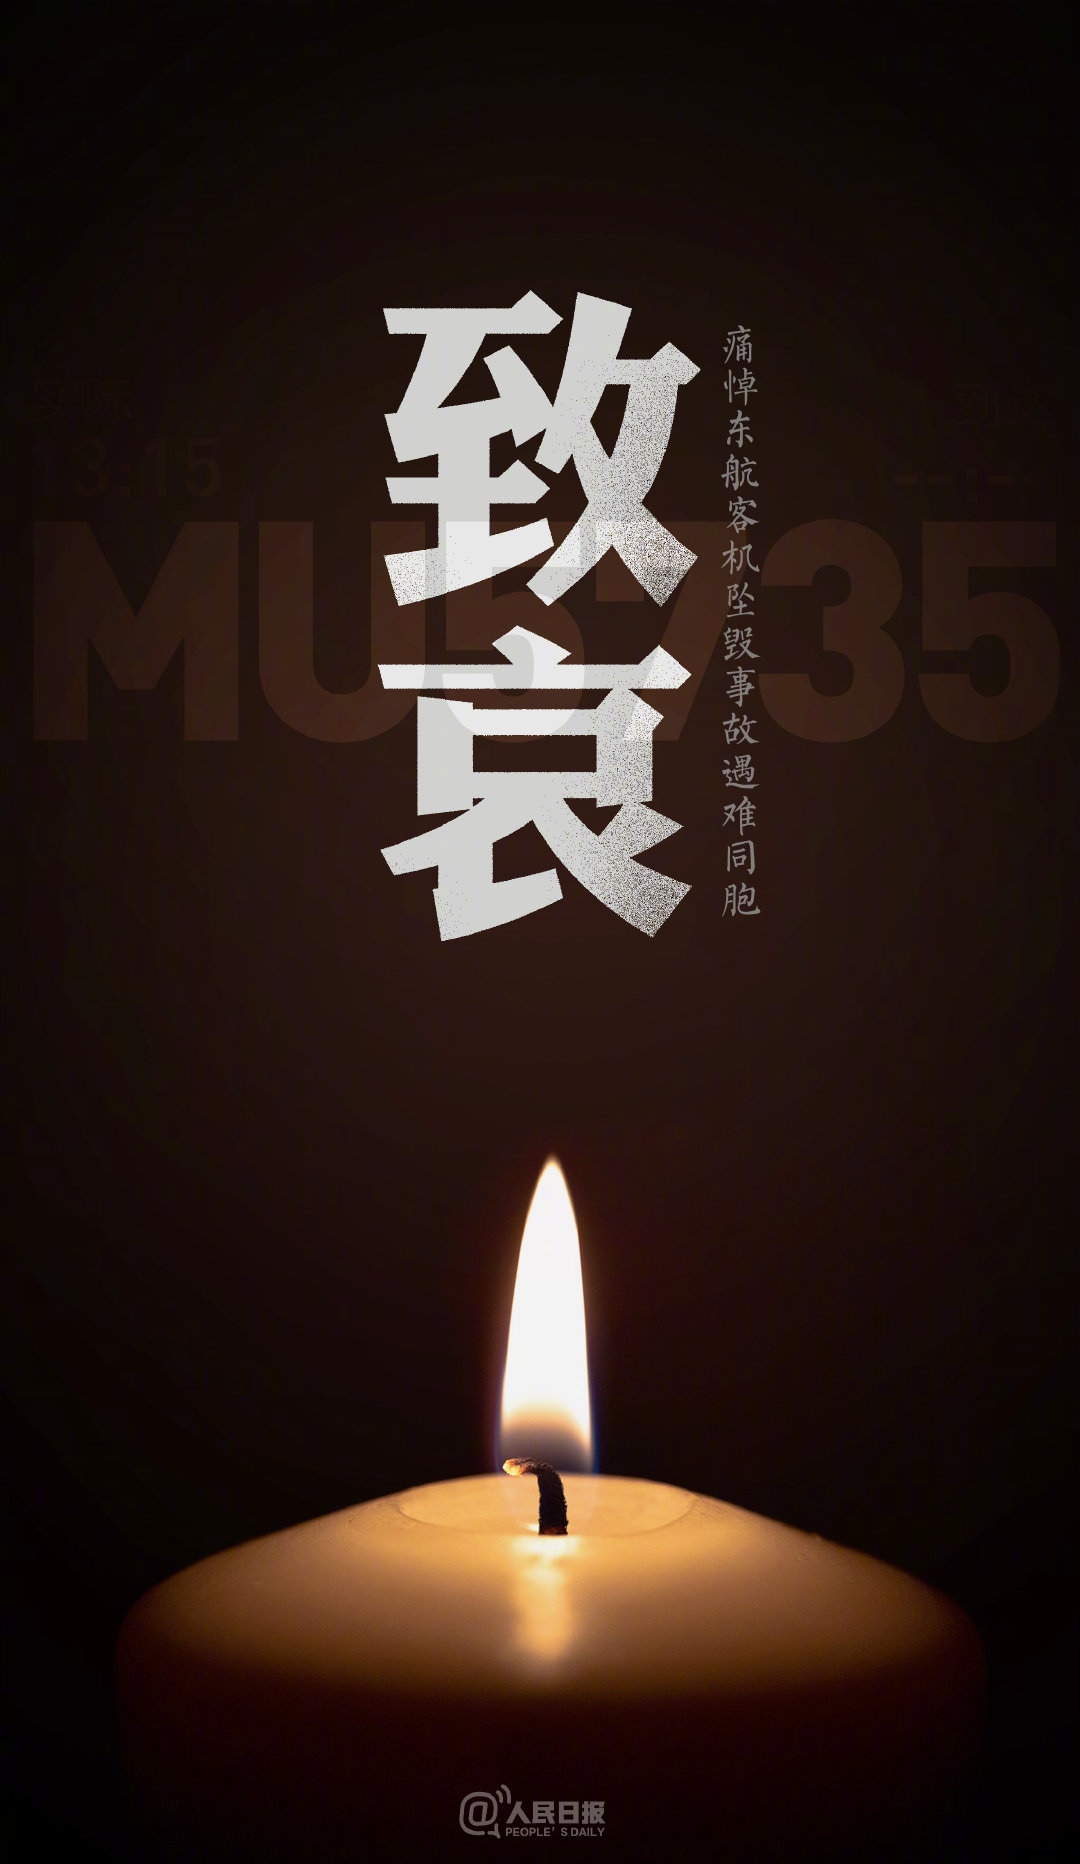 【MU5735】为逝世同胞默哀，愿天堂再无疾苦